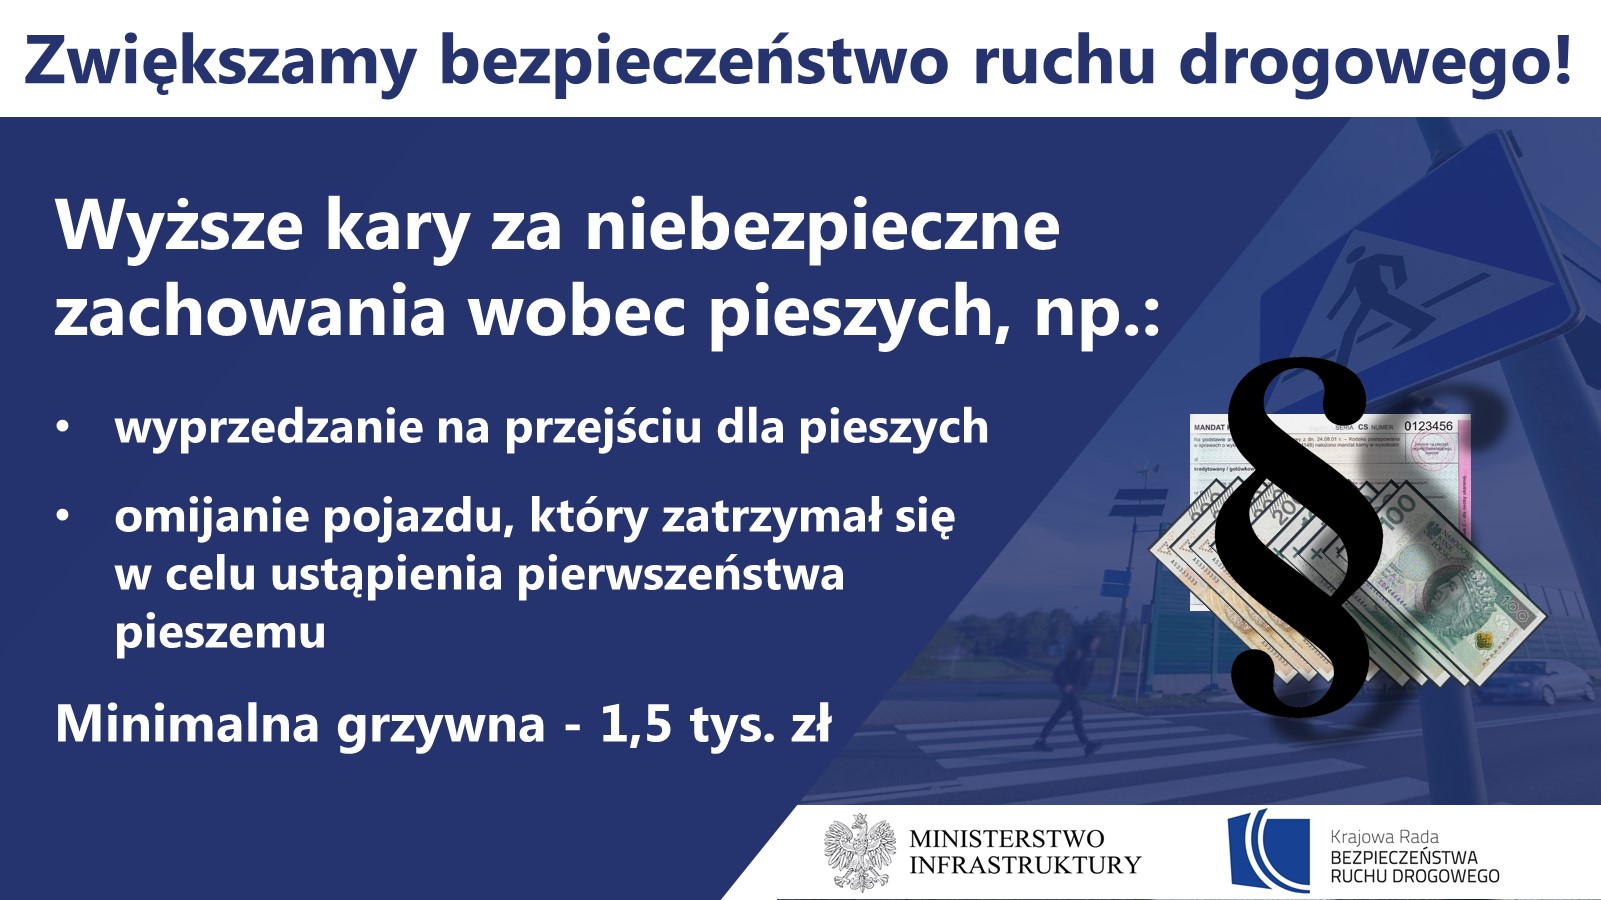 Mateusz Morawiecki: „Właśnie zrobiliśmy kolejny krok w wojnie z przestępcami drogowymi”